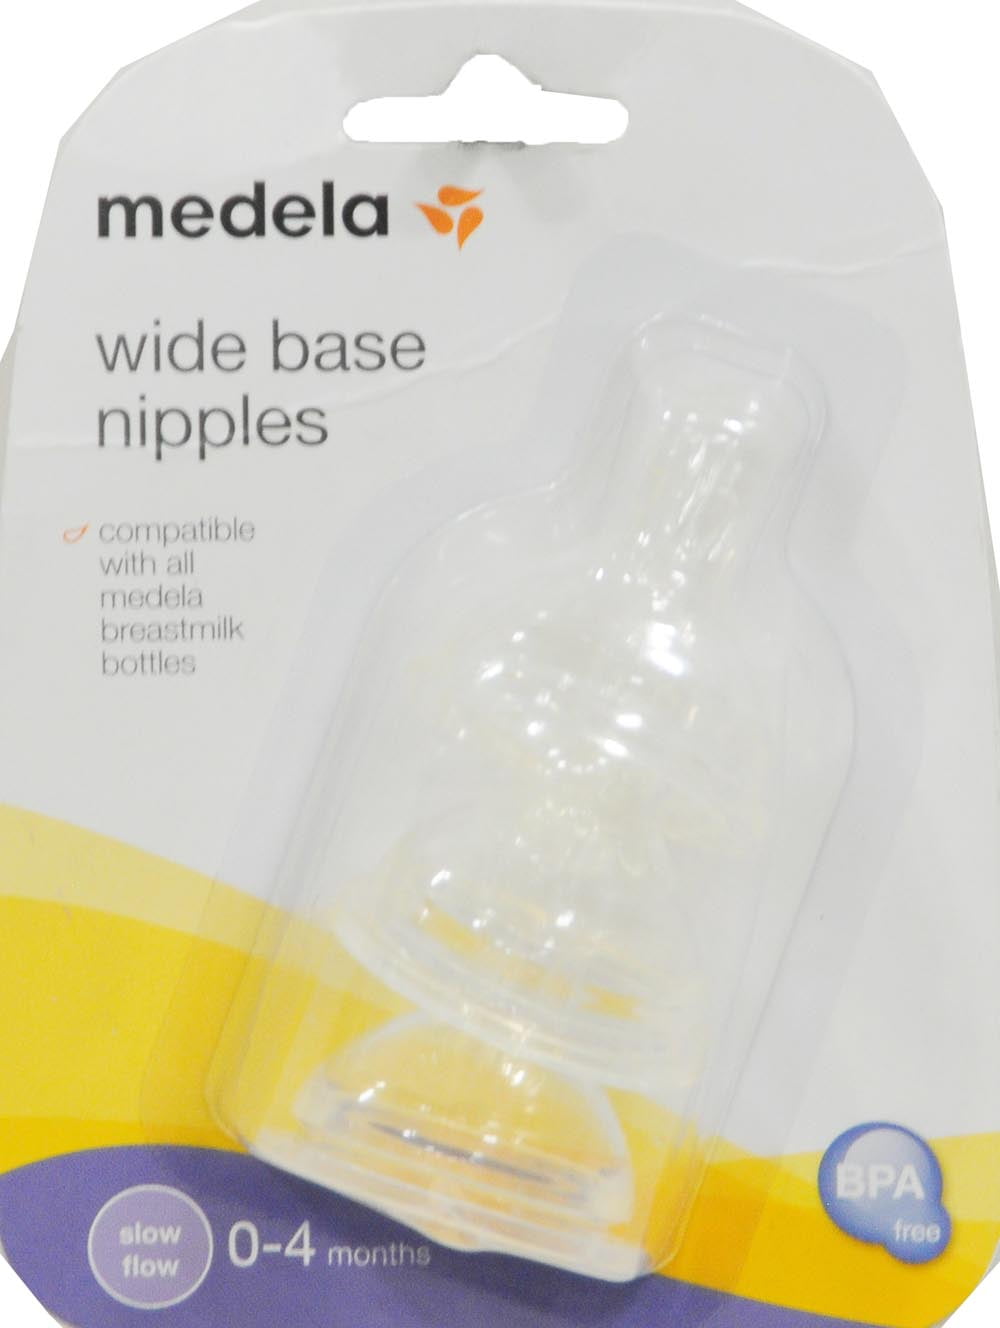 medela bottle nipples slow flow